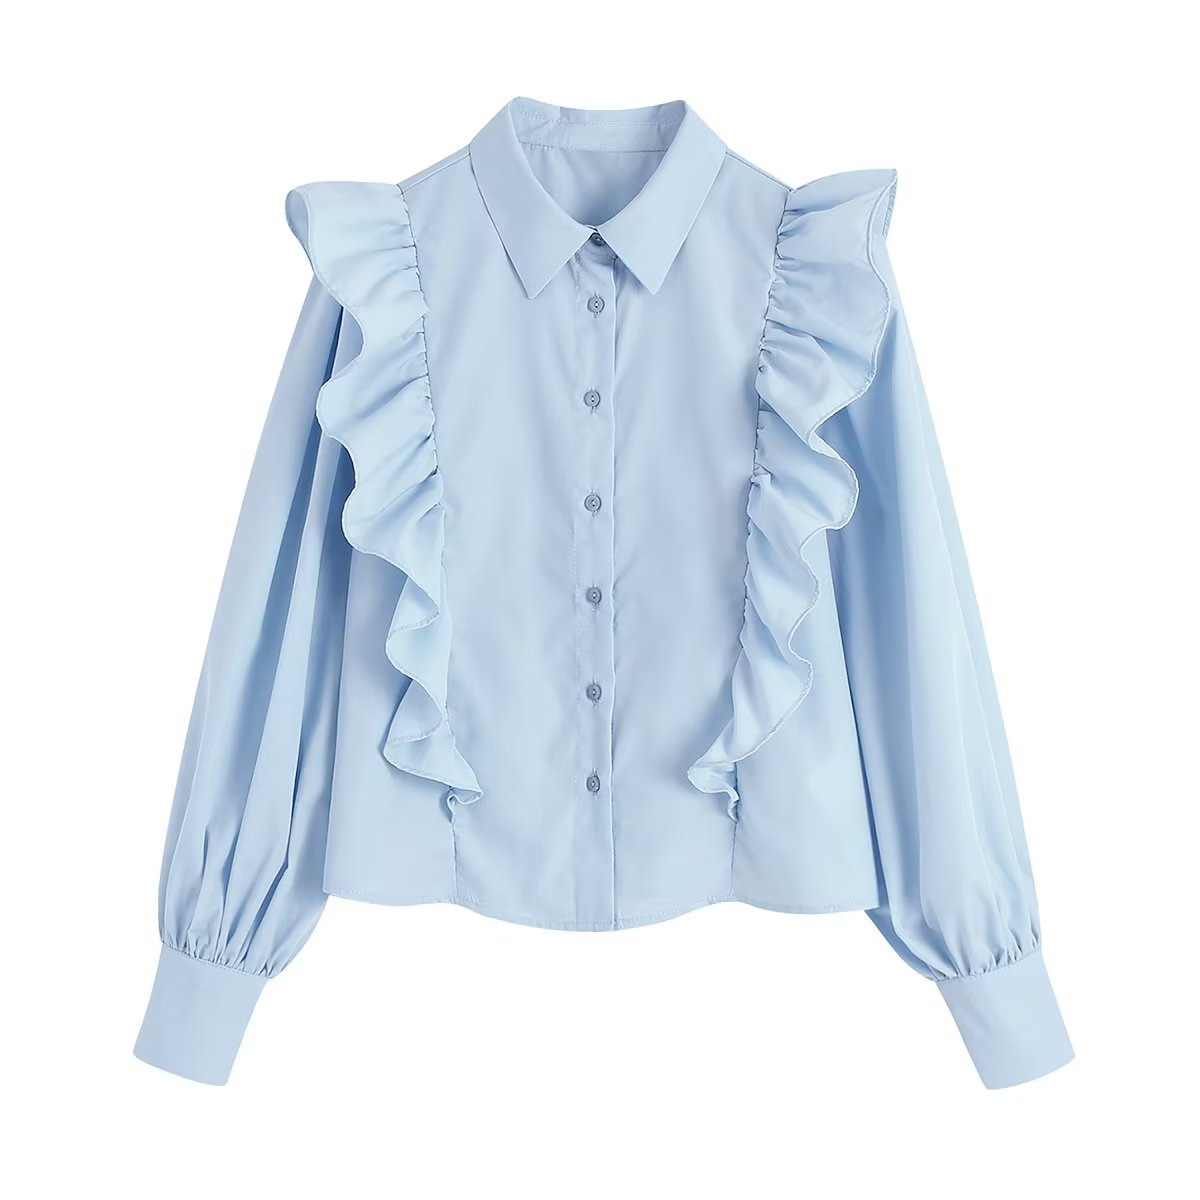 1988女装新款23年初春欧美风纯色荷叶边翻领单排扣减龄衬衫女衬衣1